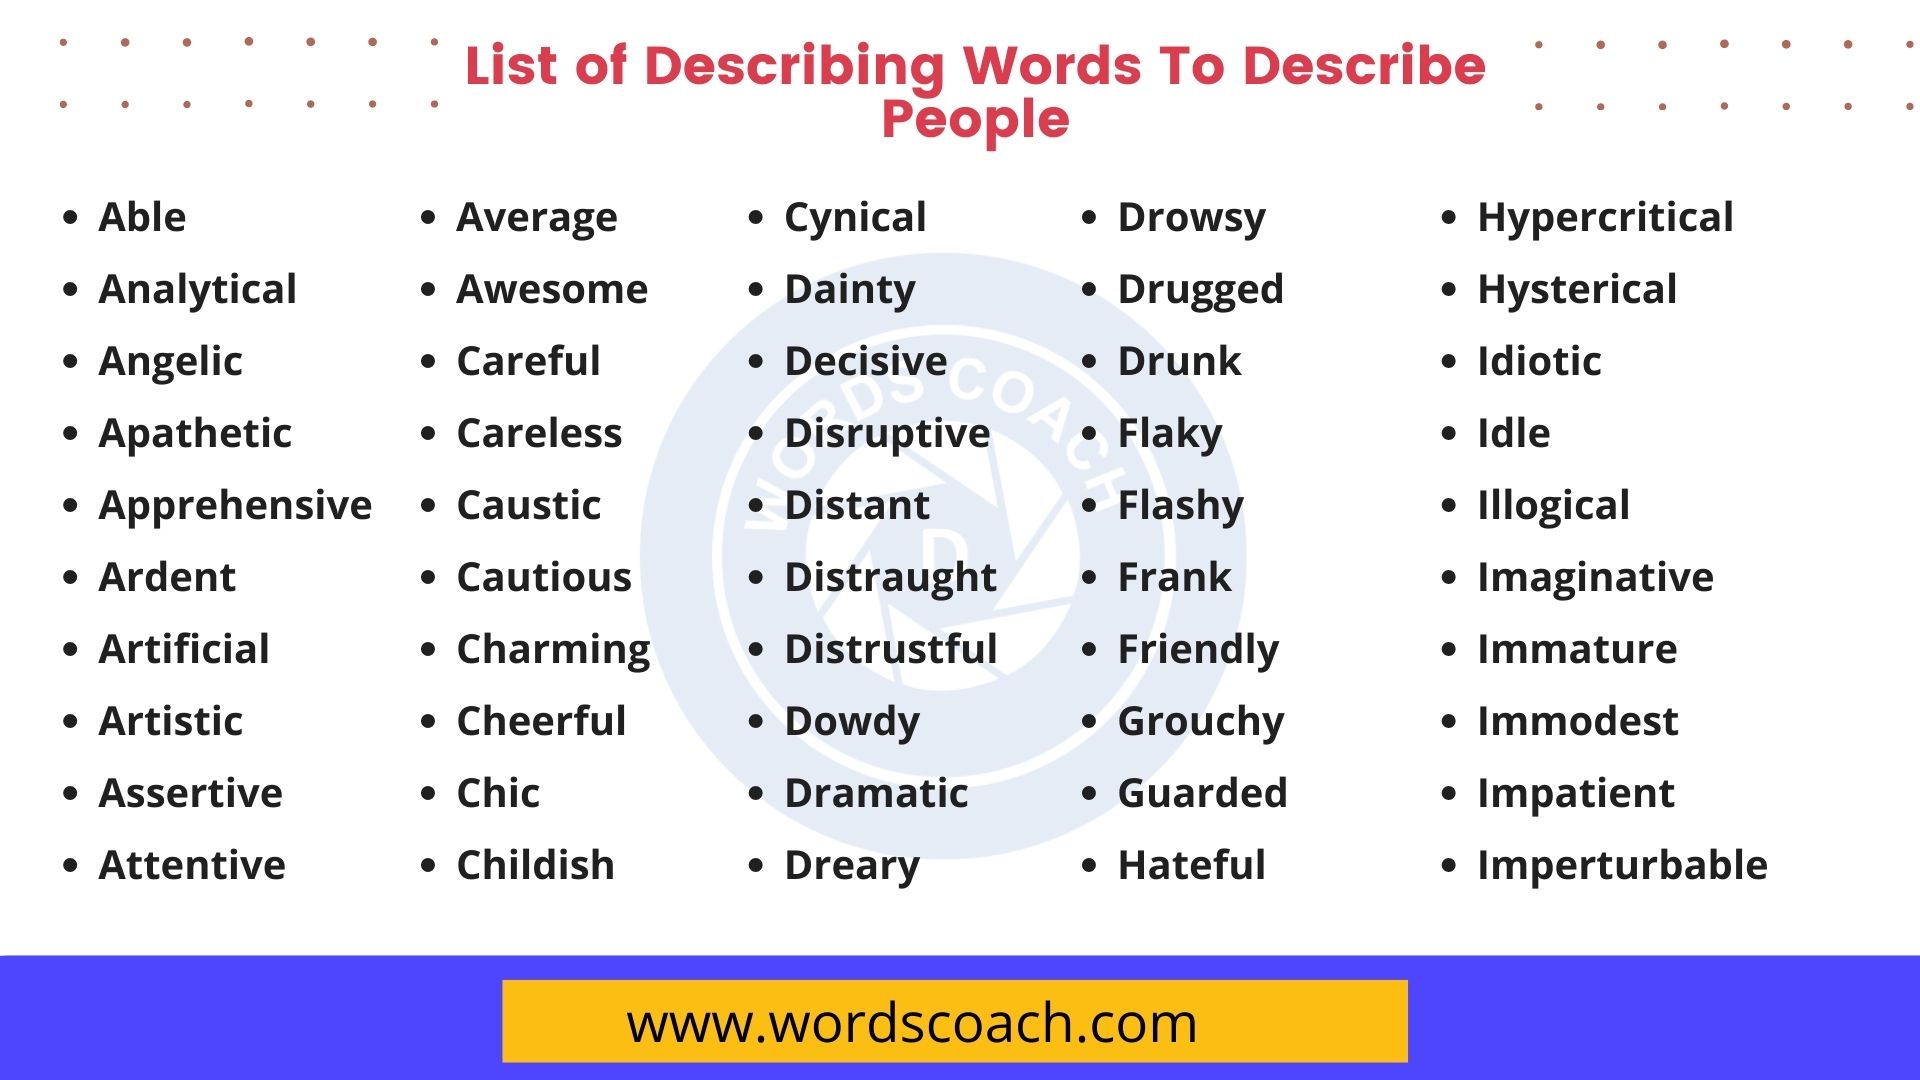 List of Describing Words